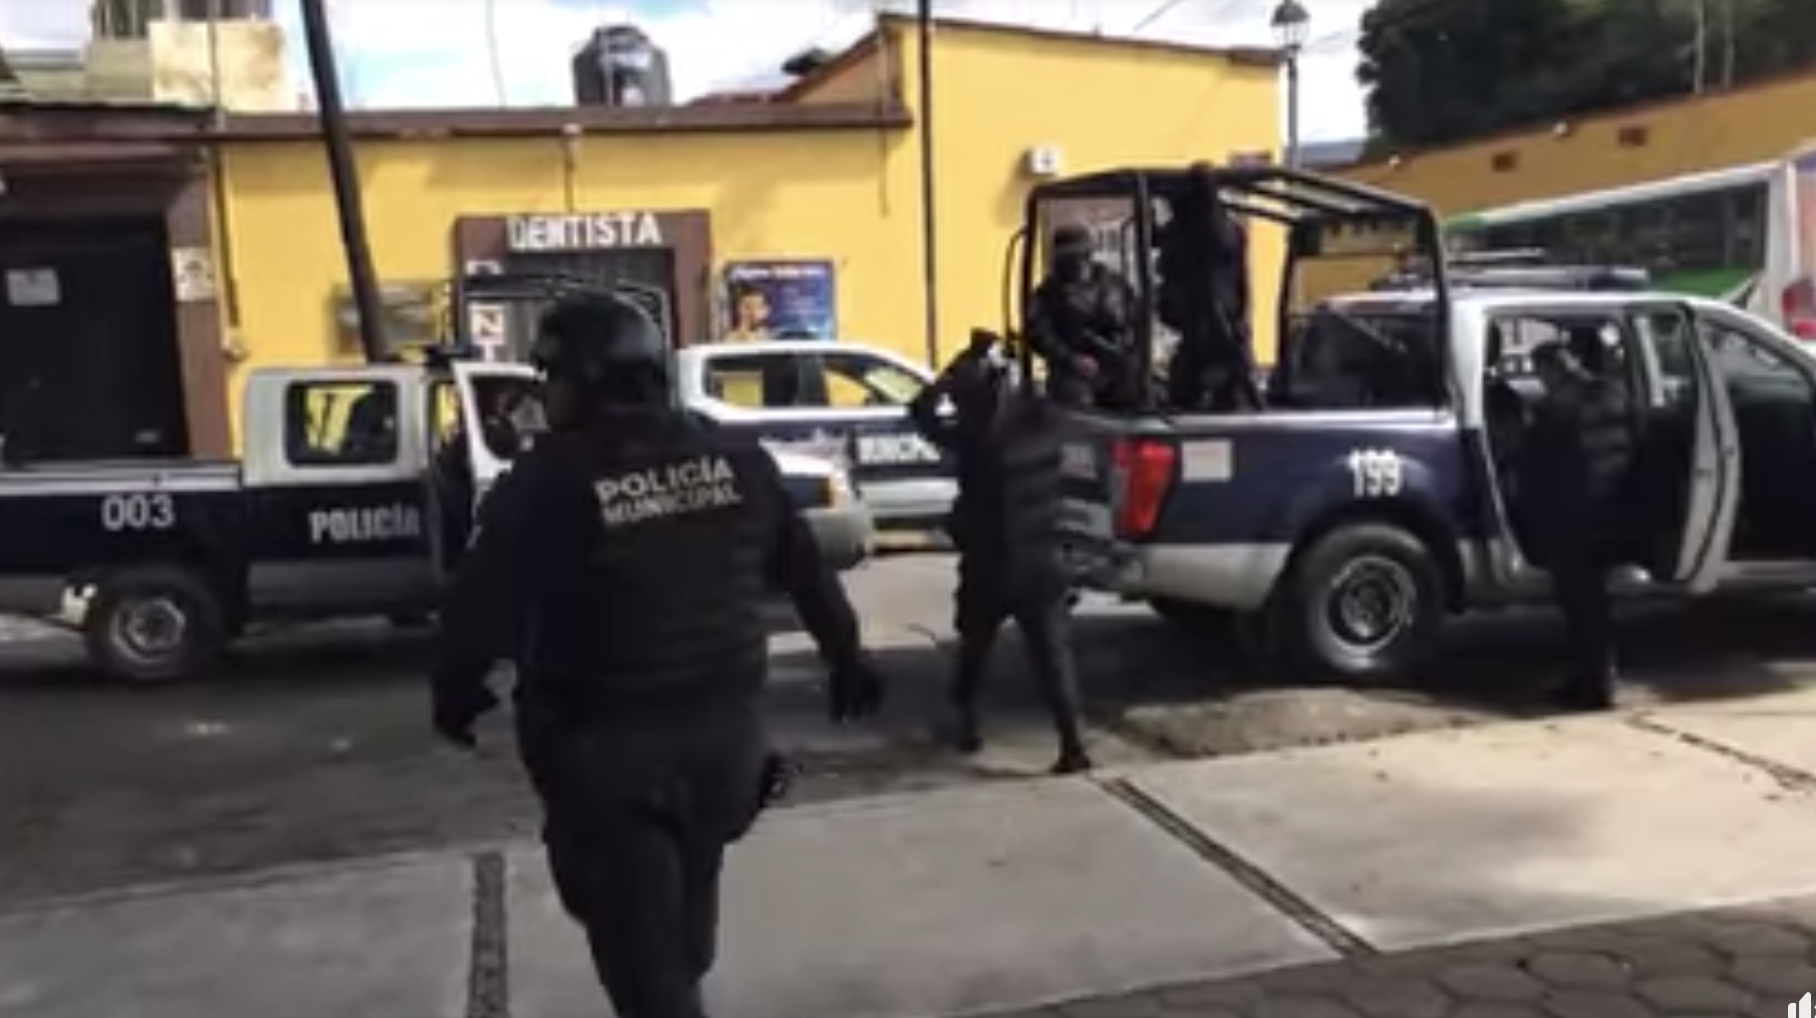 Pidieron un día de venta y fueron golpeados | El Imparcial de Oaxaca